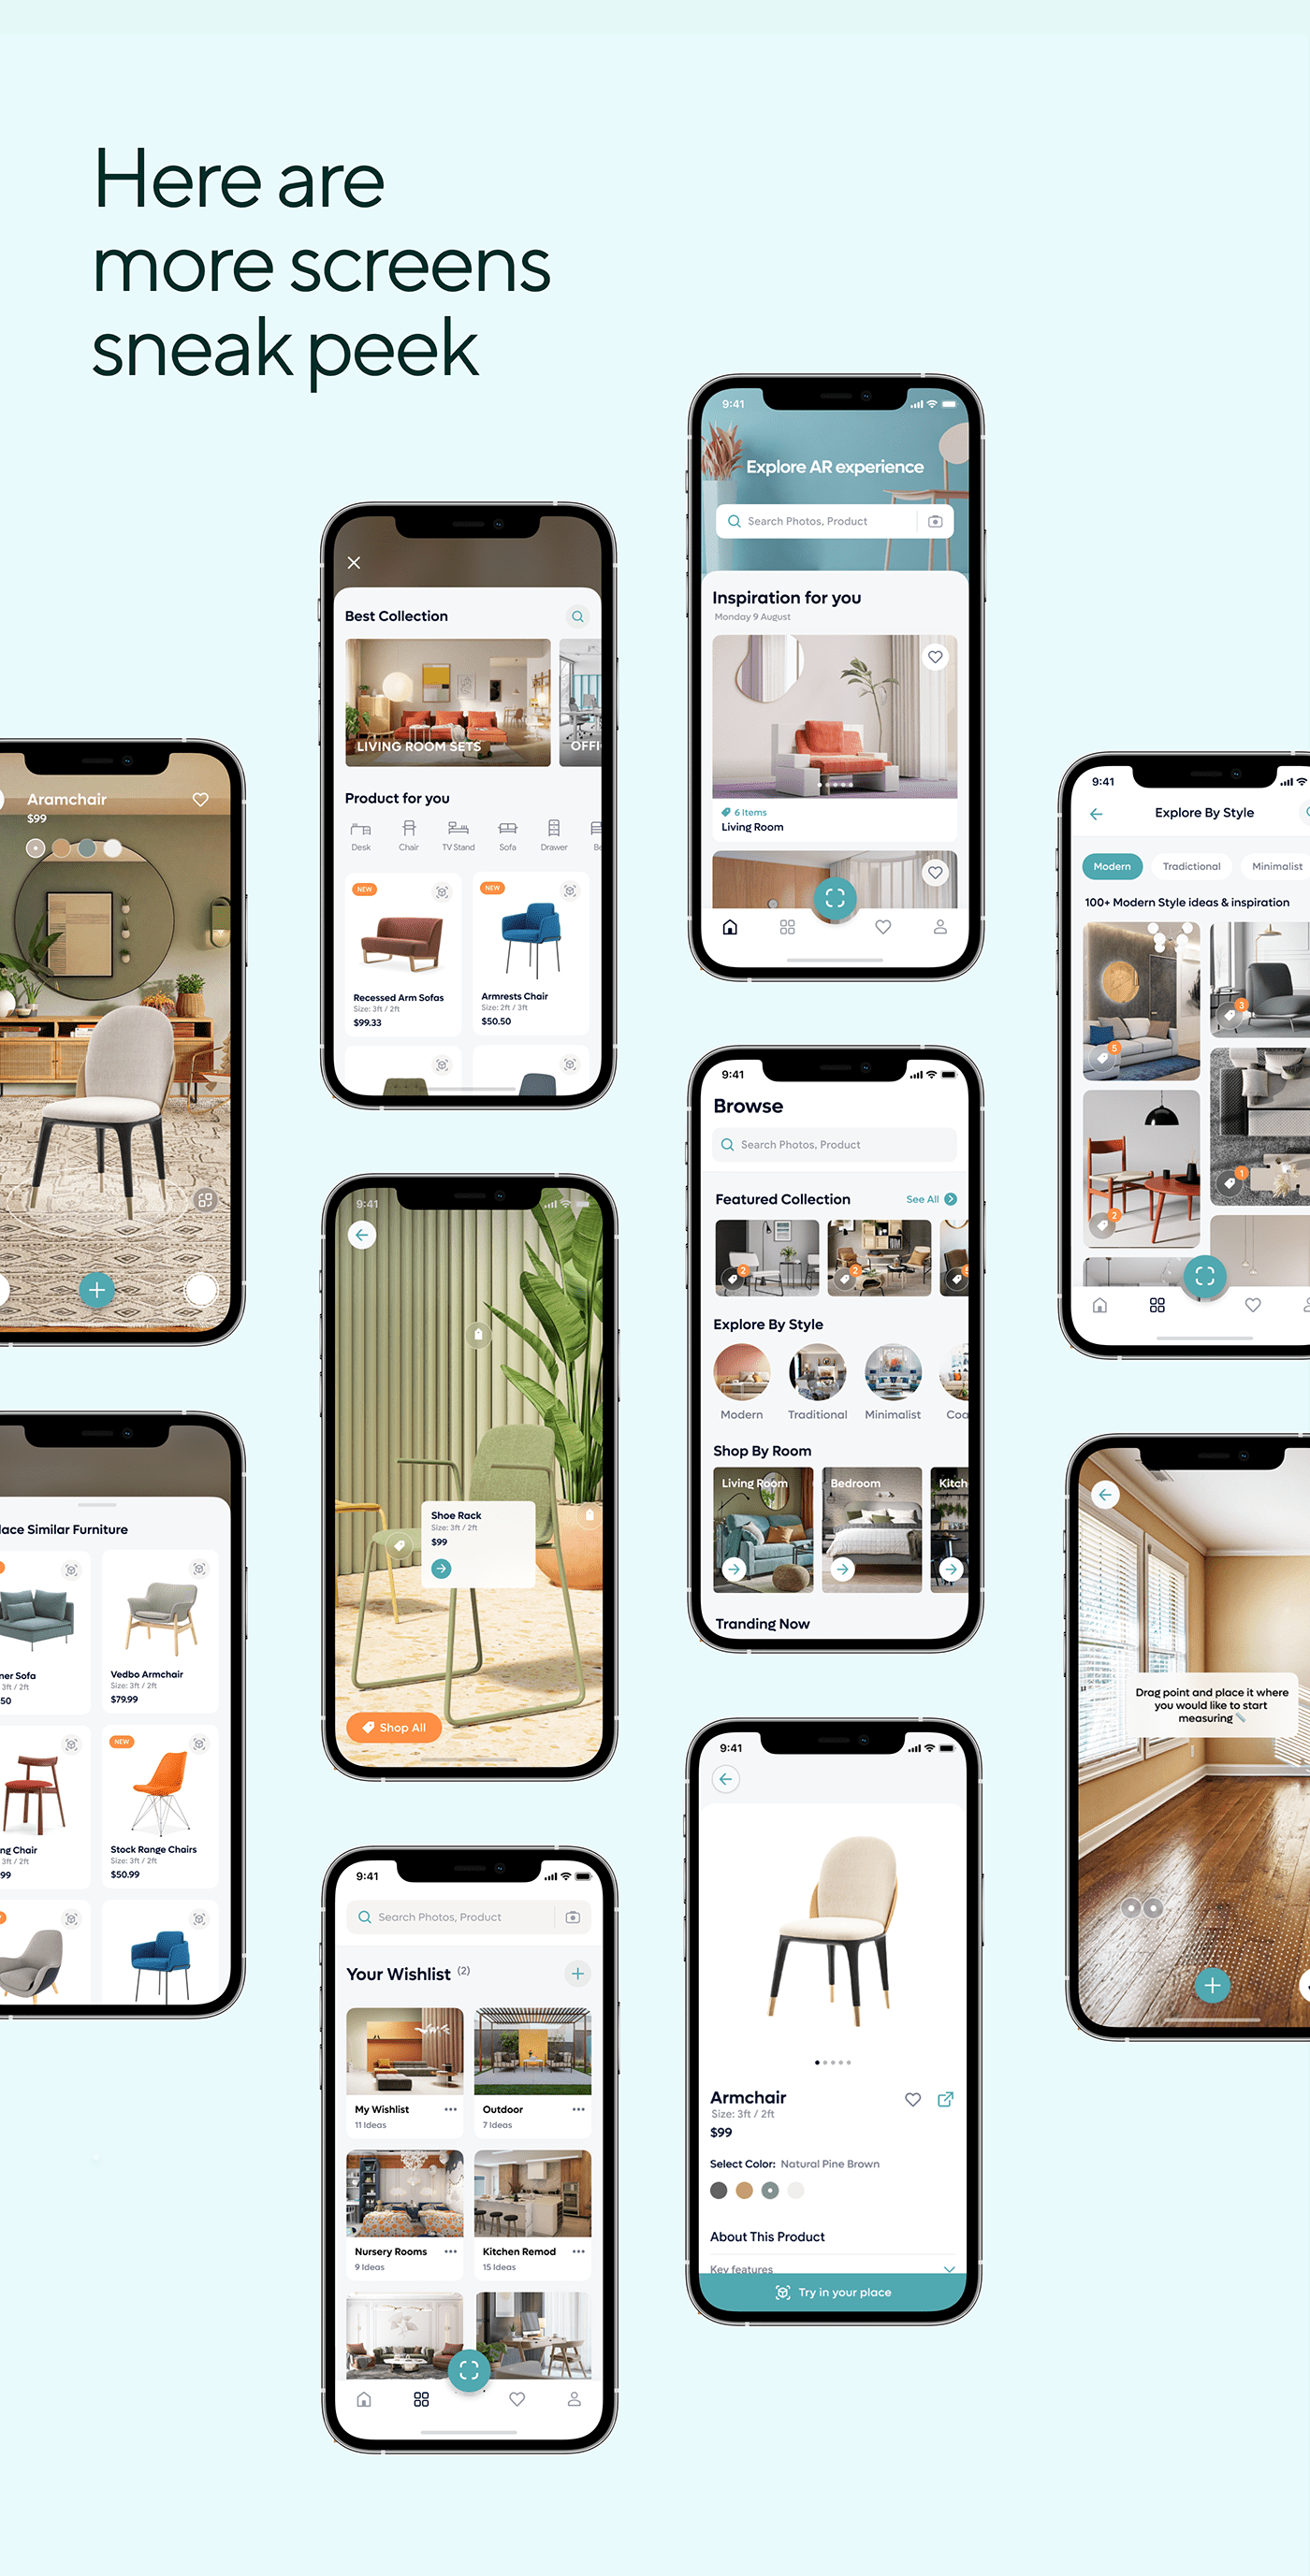 Furniture app design